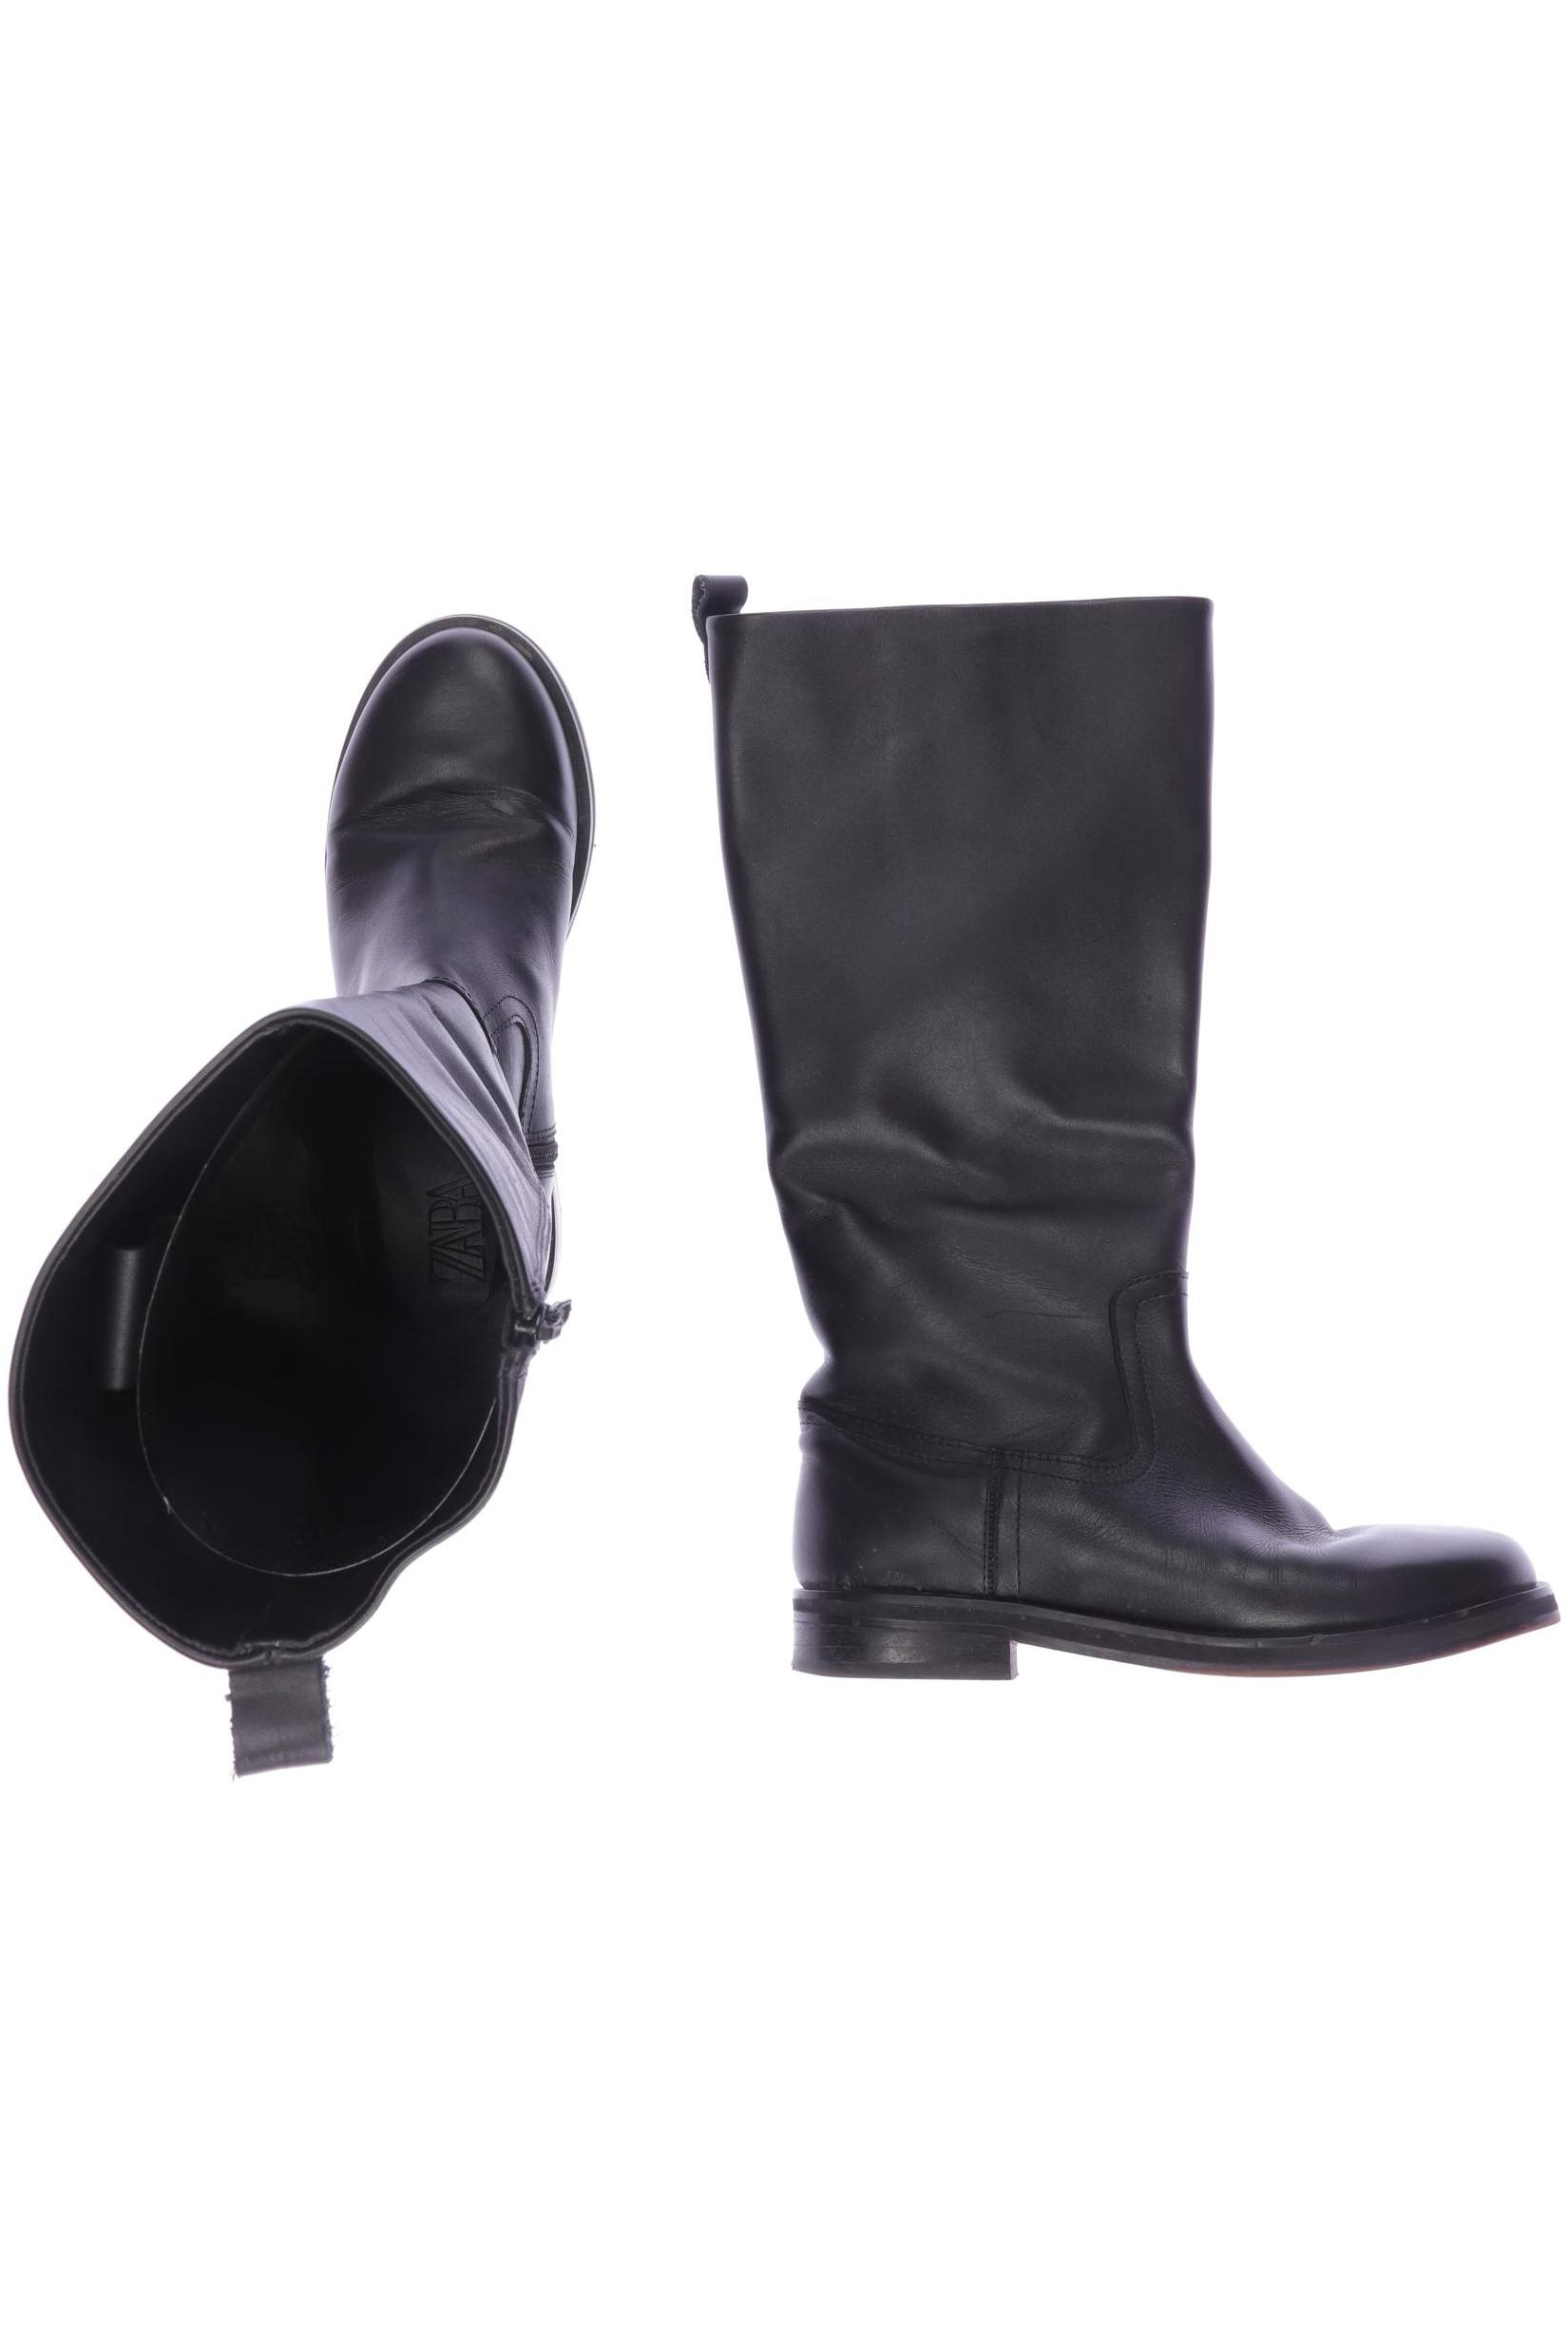 Zara Damen Stiefel, schwarz, Gr. 38 von ZARA